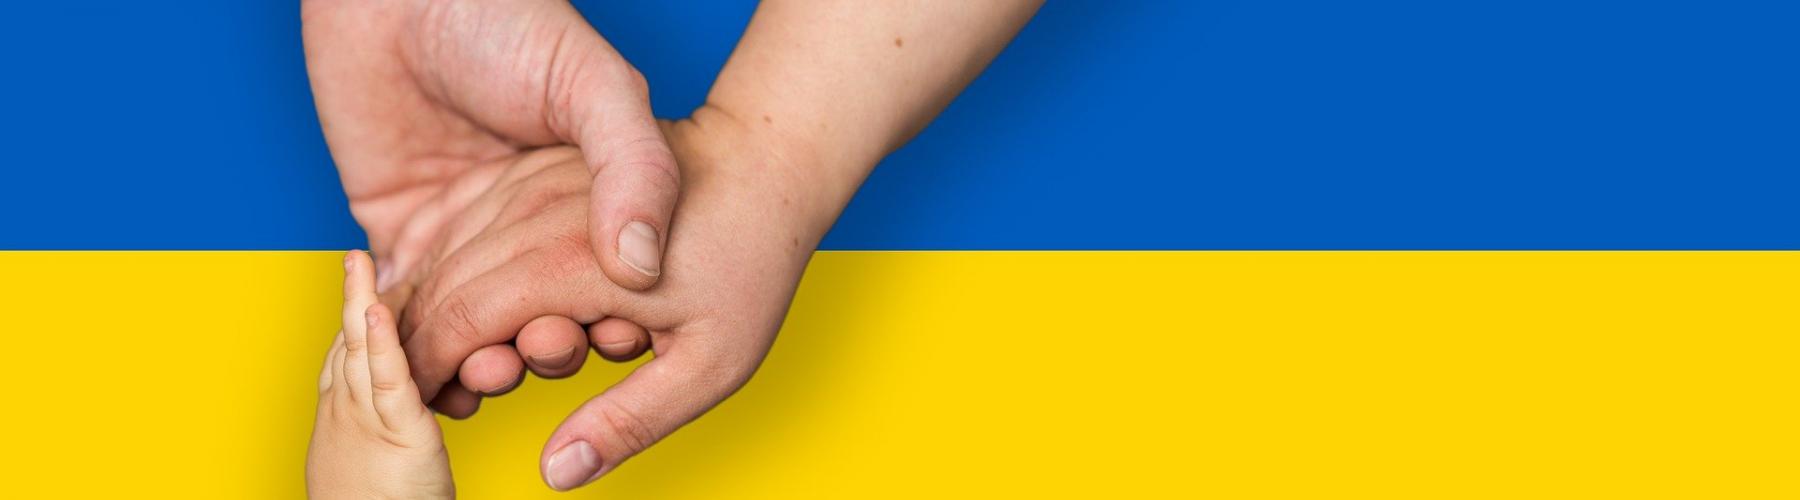 mains d'homme, femme et enfant qui se tiennent devant le drapeau ukrainien